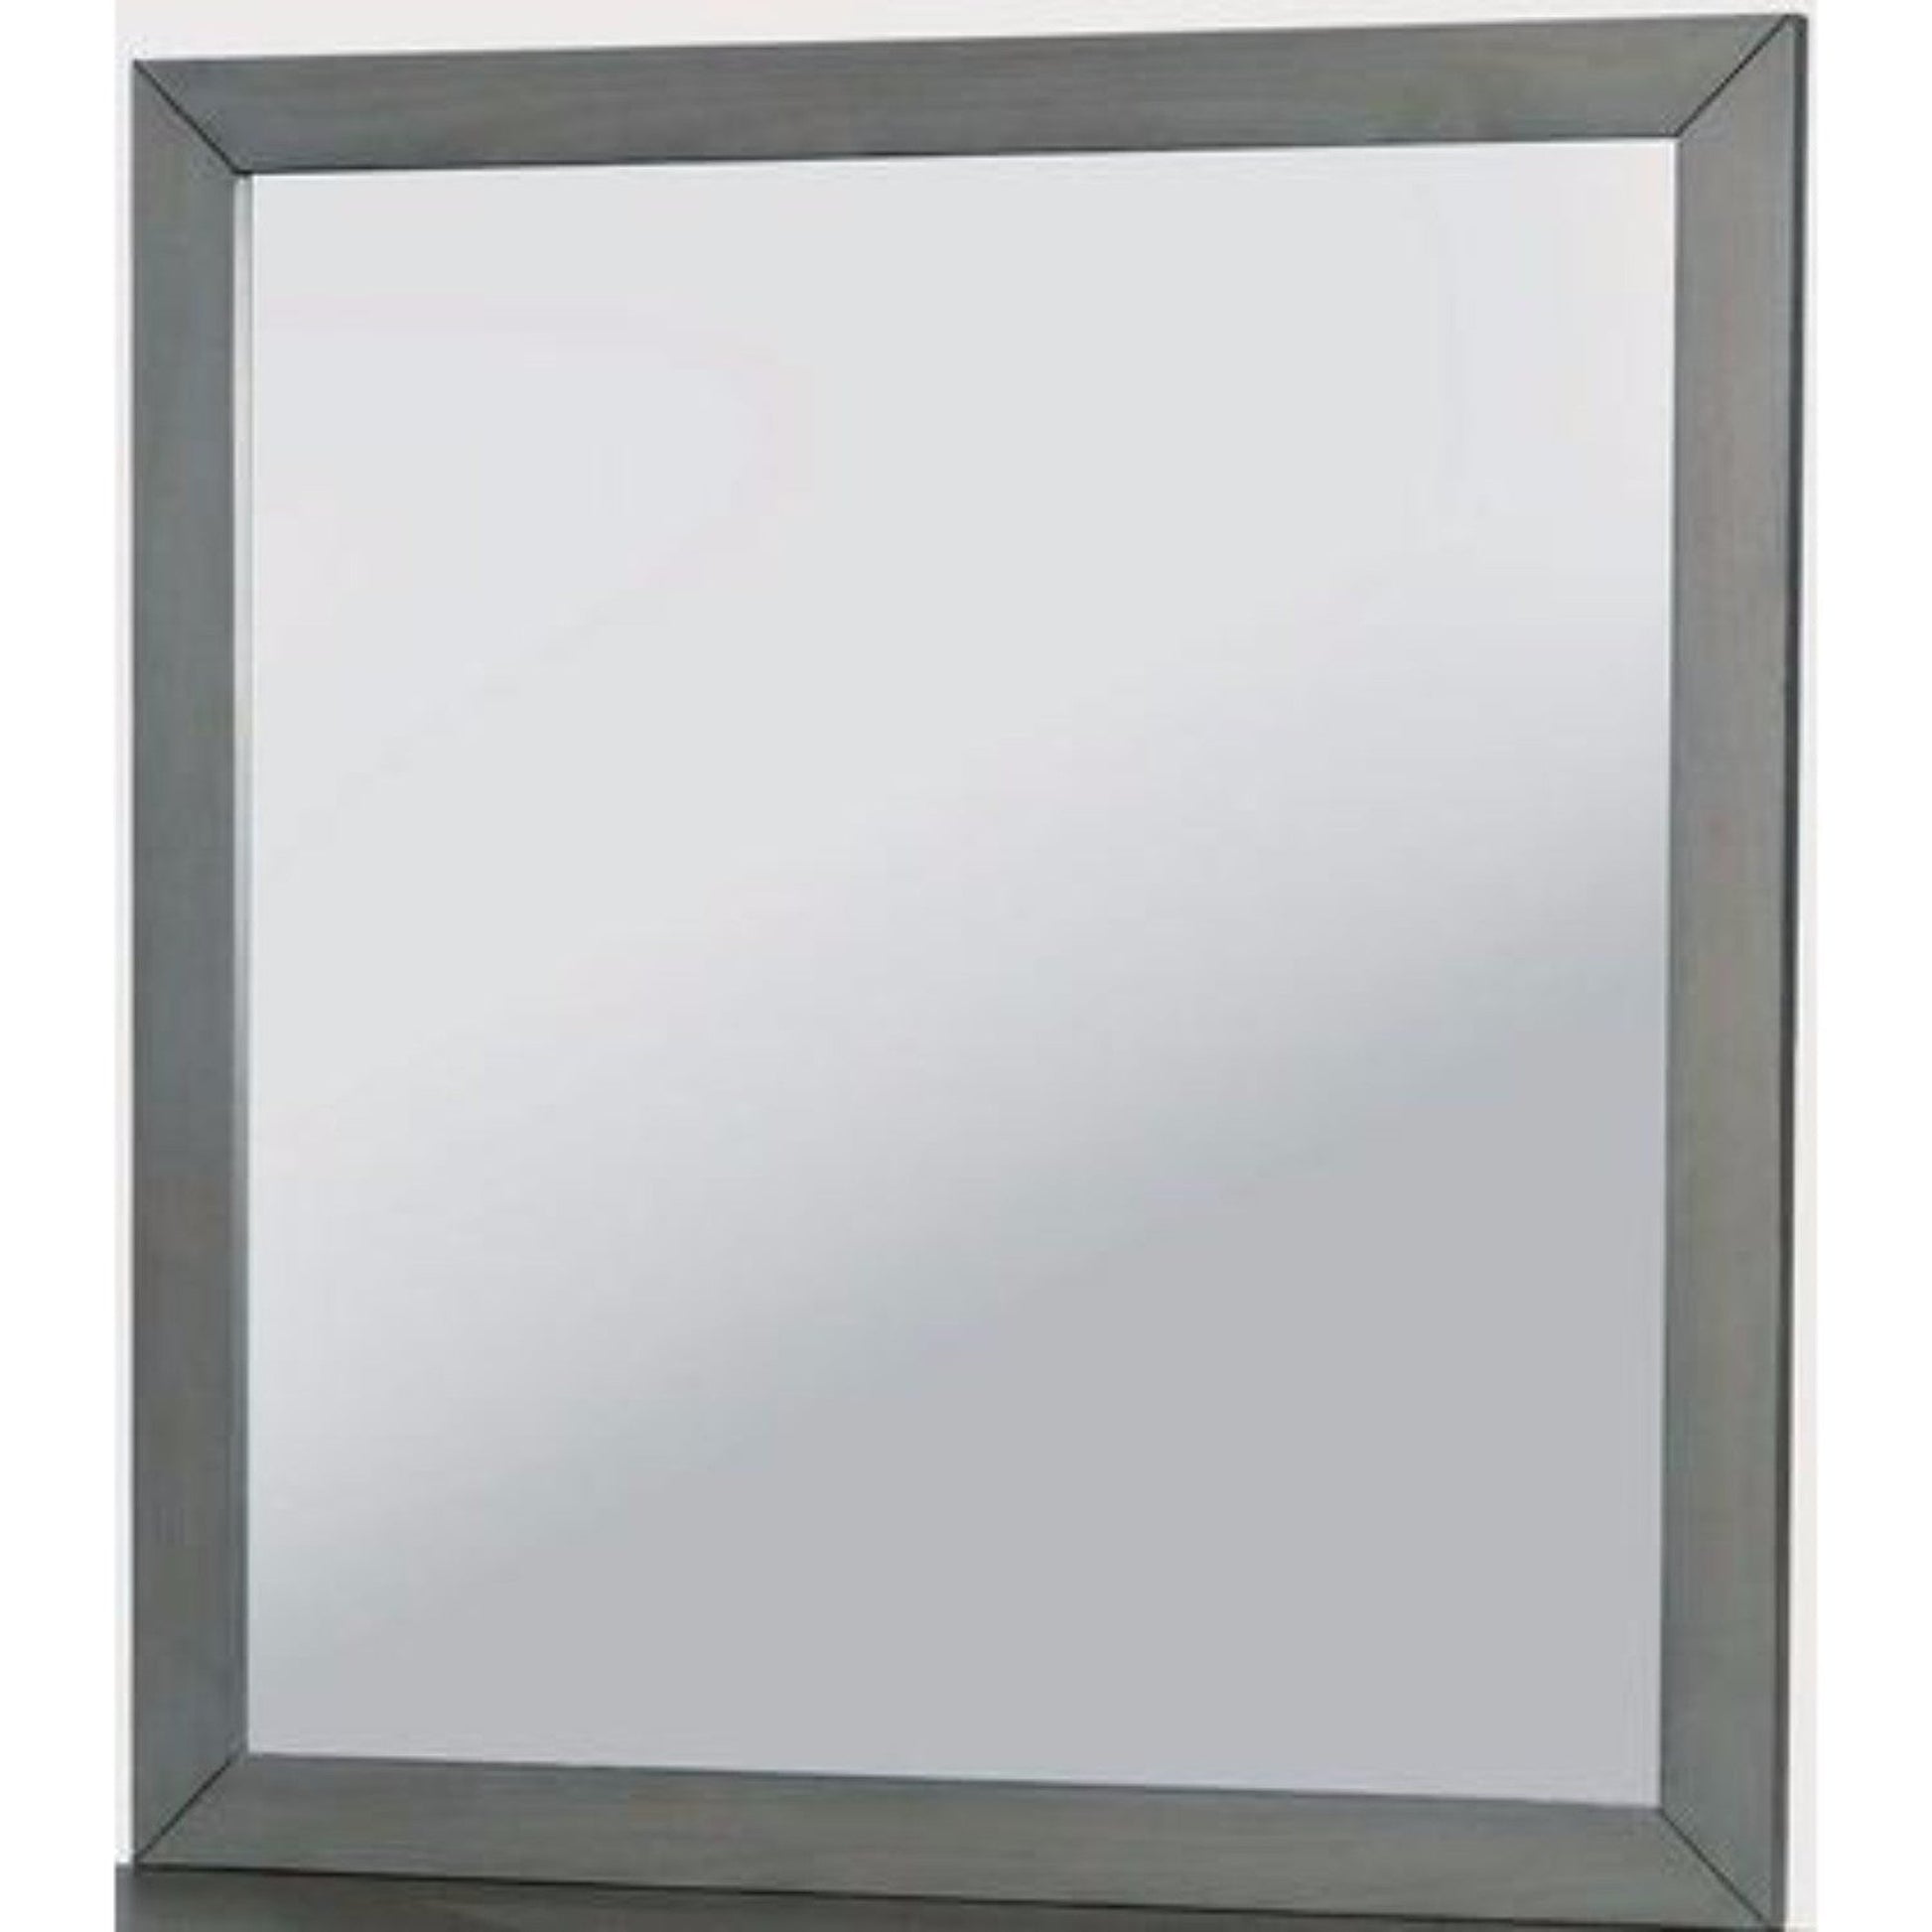 Benzara Lennart Gray Rectangular Wooden Framed Wall Mirror